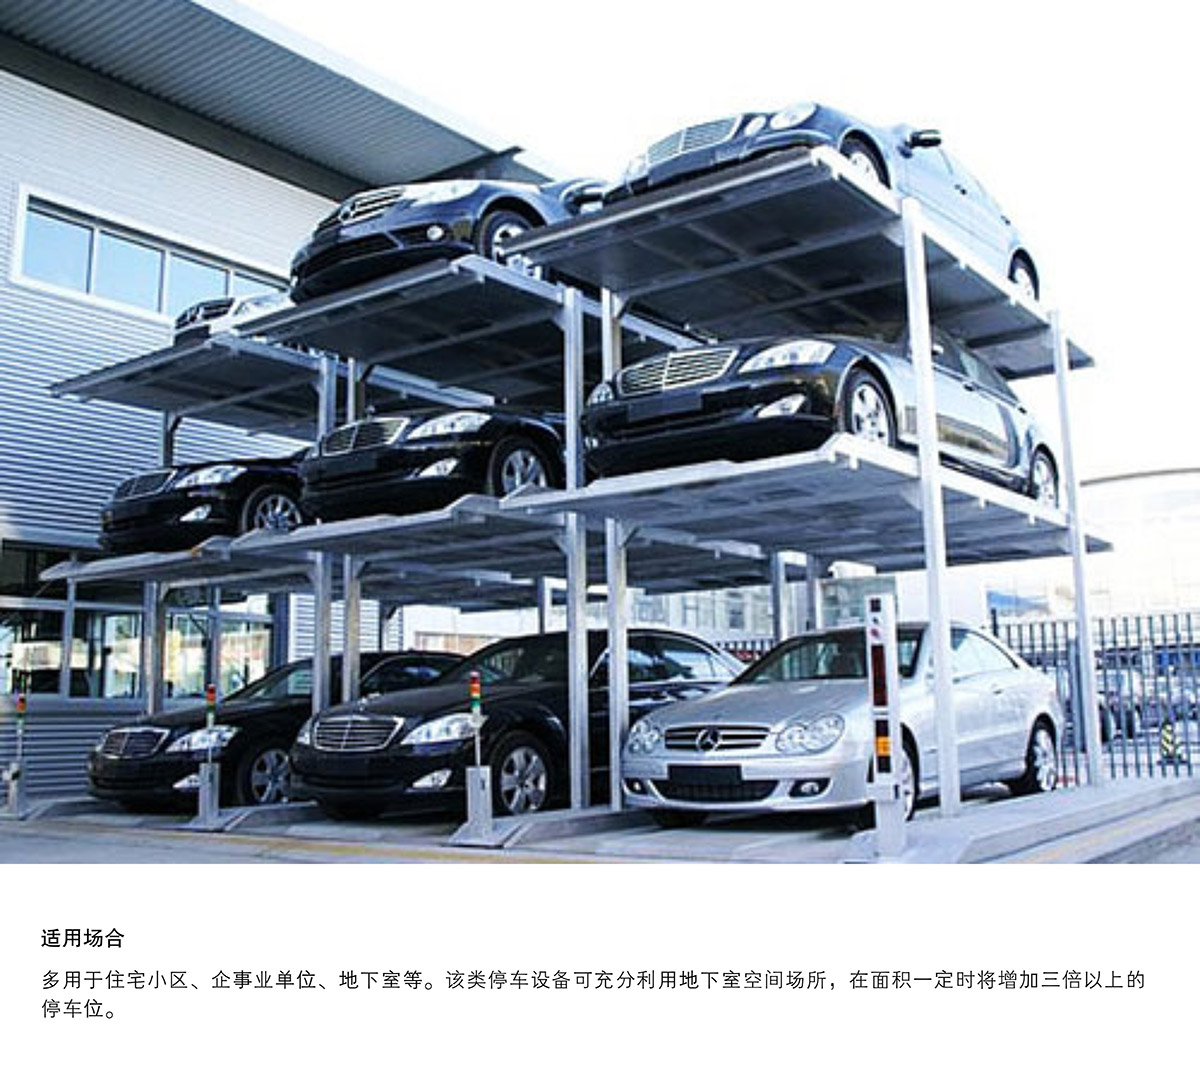 机械车库PJS3D2三层地坑简易升降停车设备适用场合.jpg